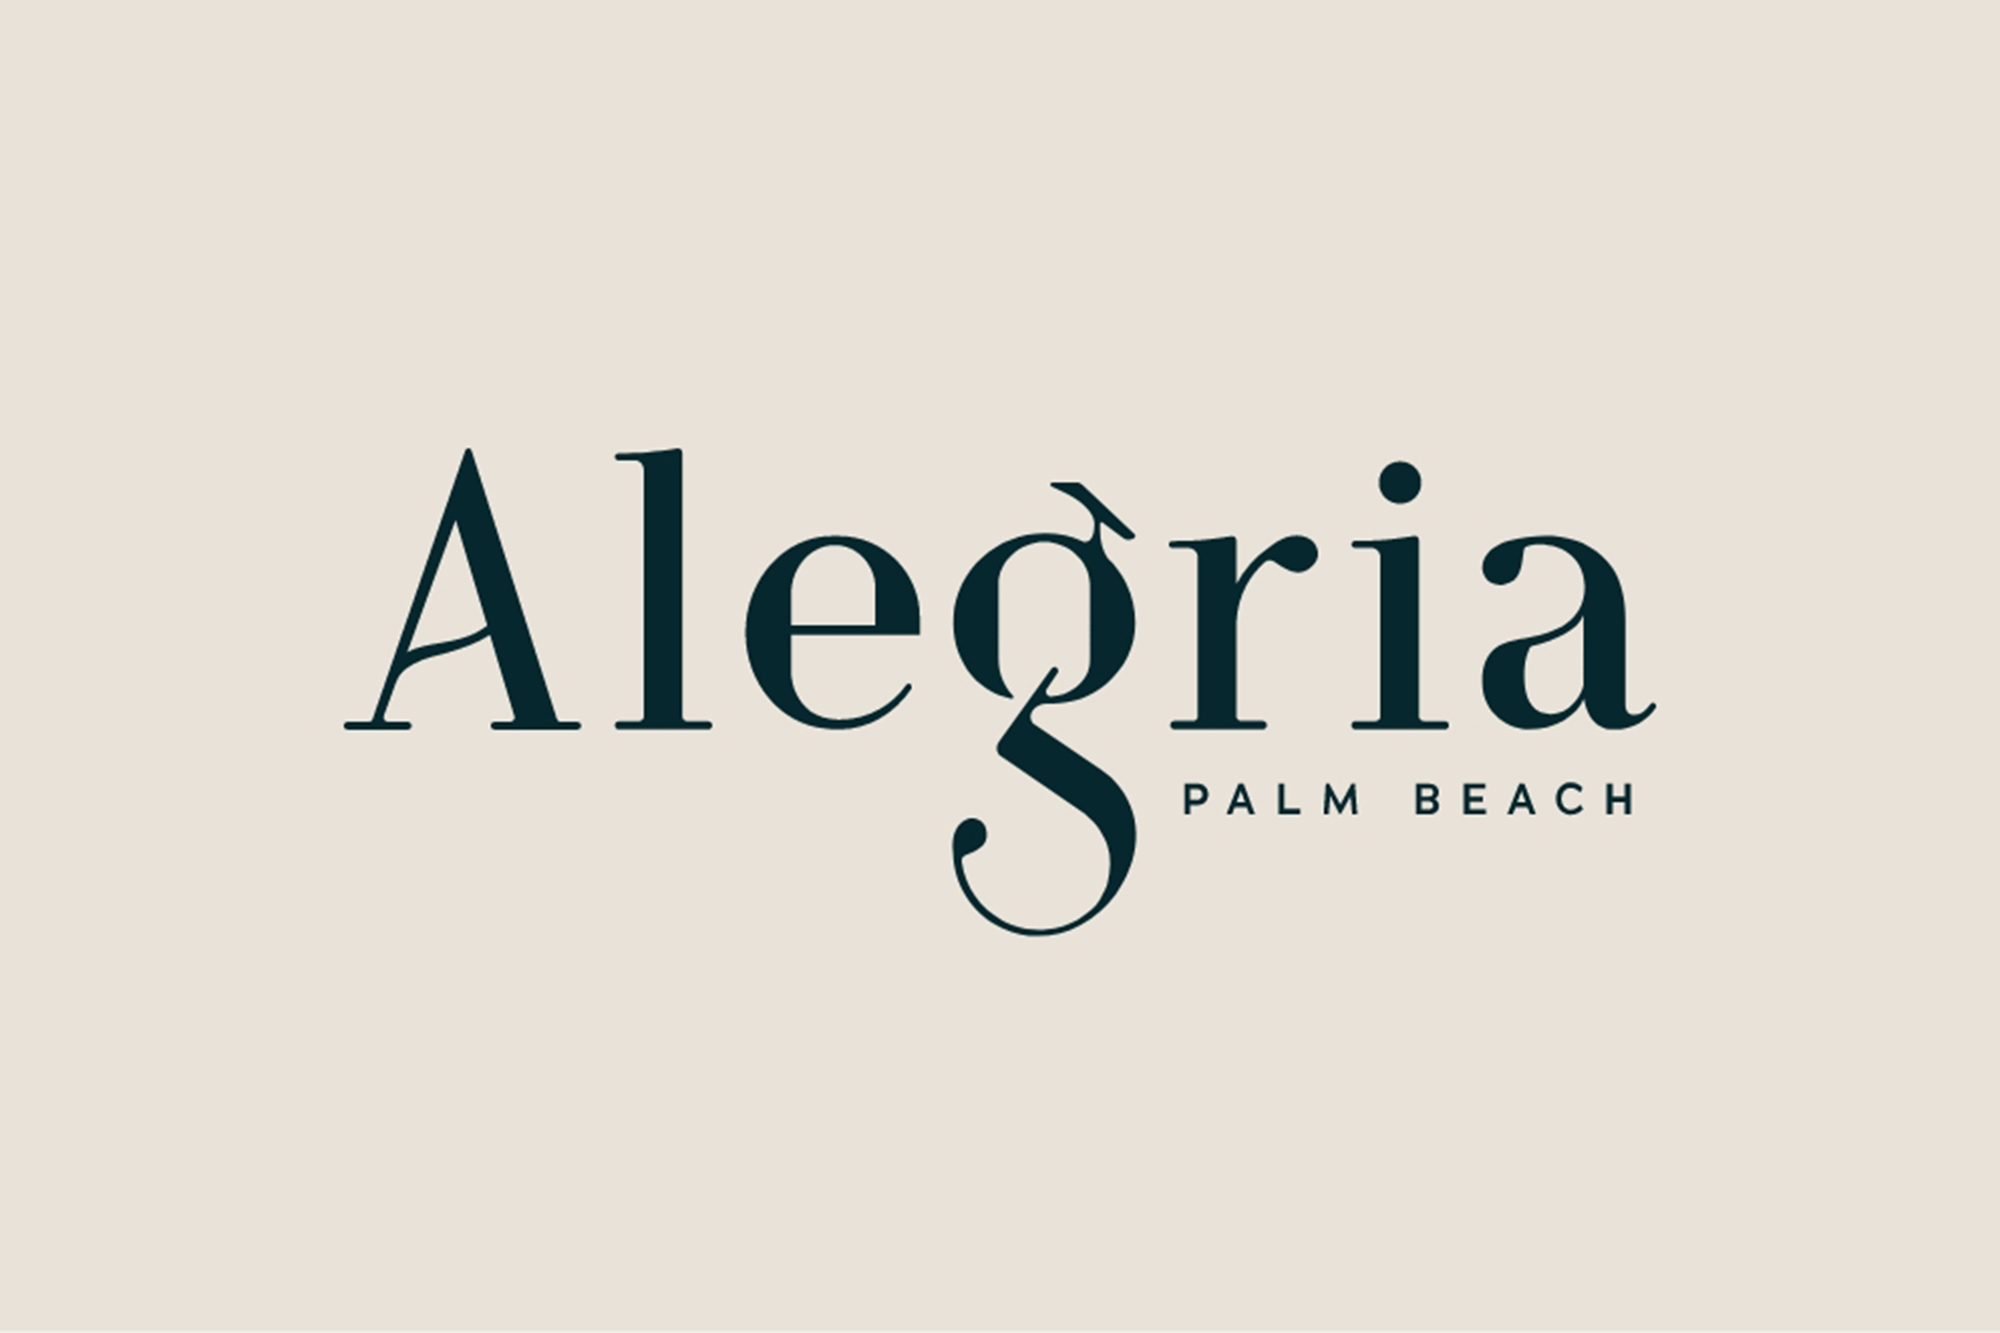 Alegria Palm Beach 04